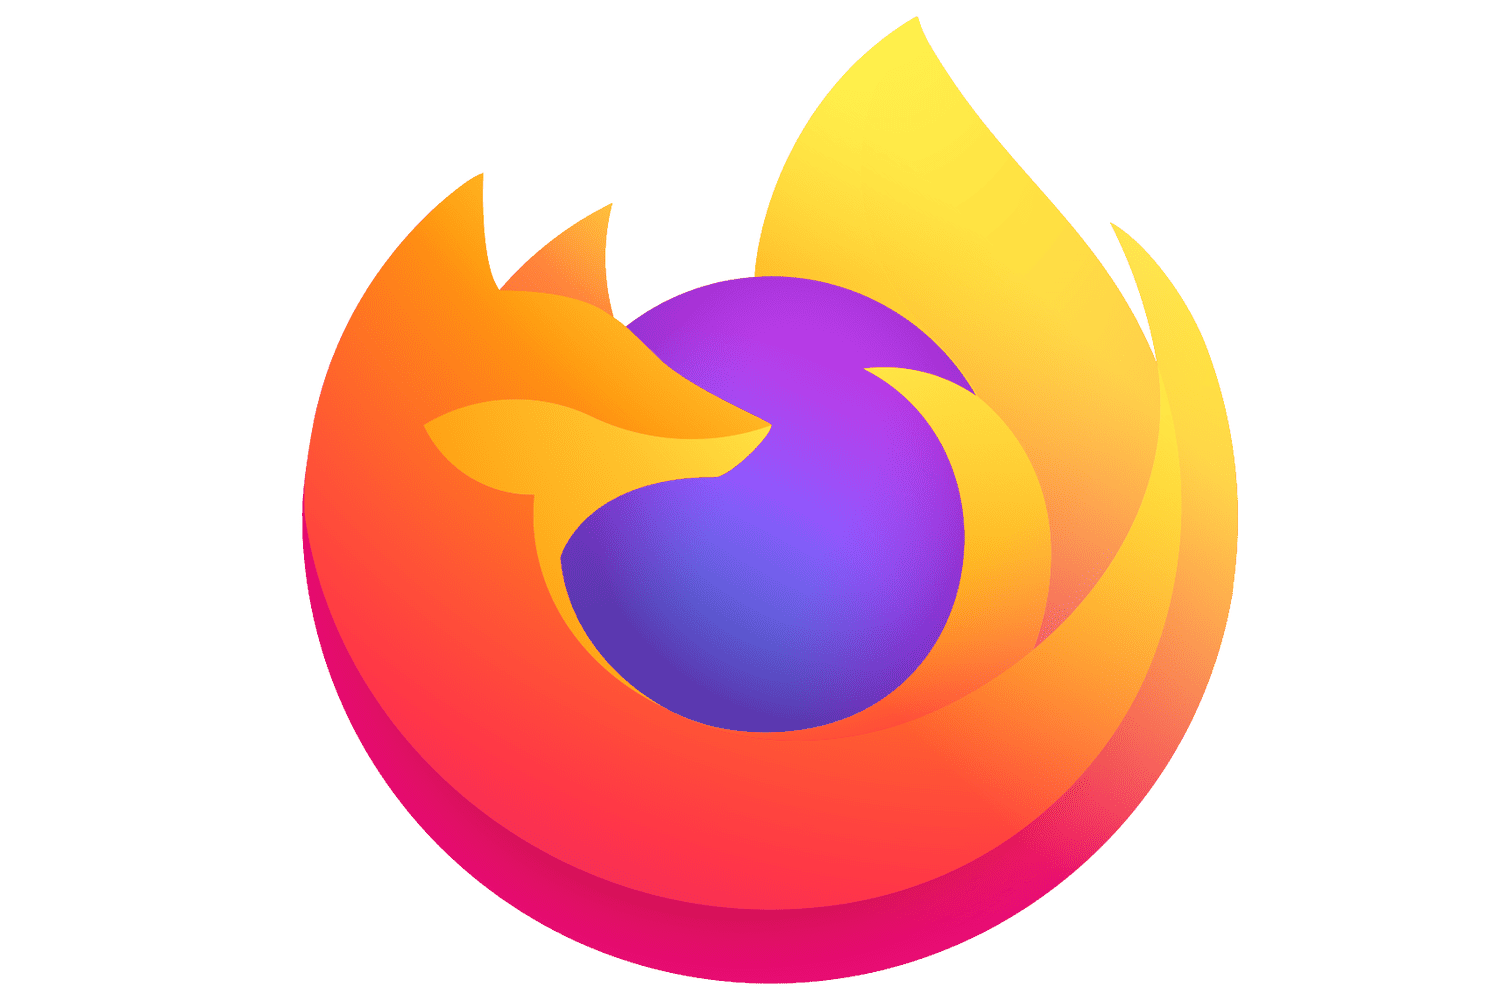 Firefox Browser Logo E5e9fdd4c2c84e4993e17de56fc7e014.png